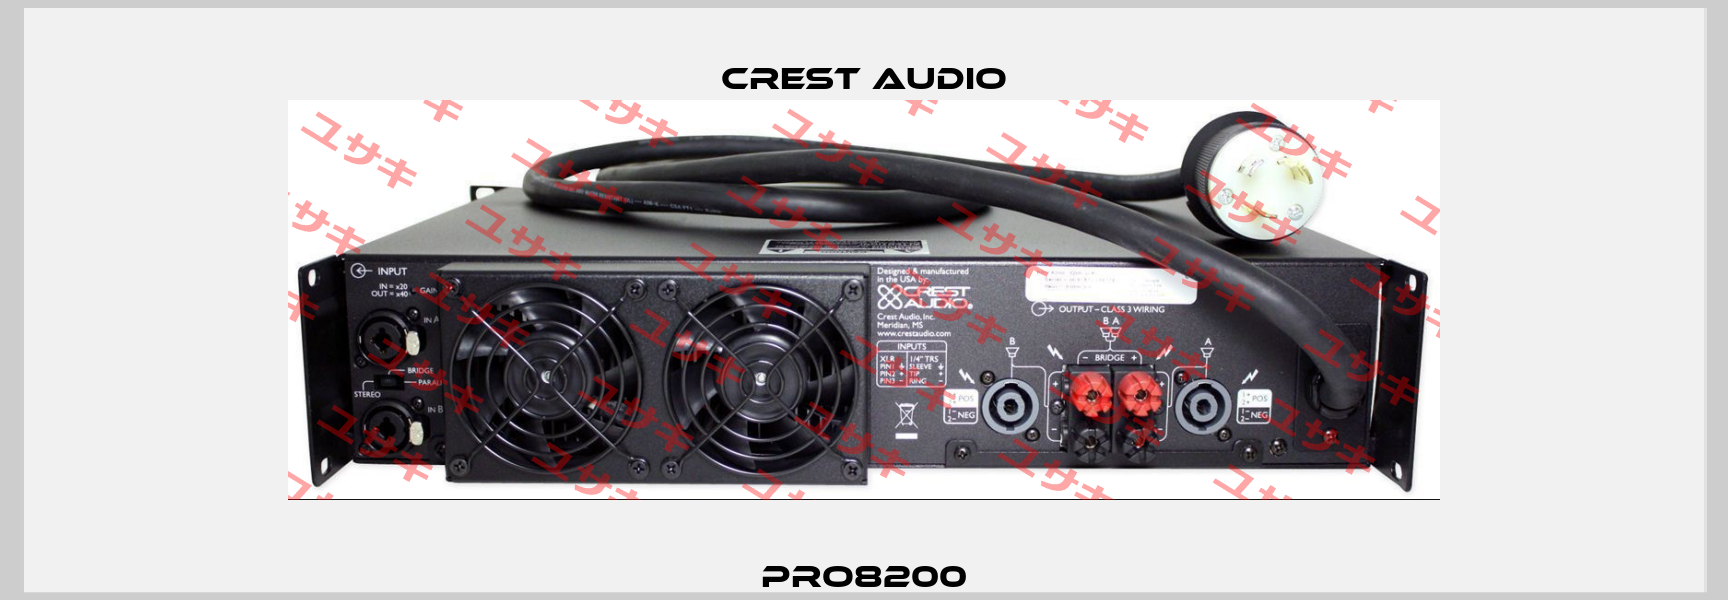 Pro8200 CREST AUDIO